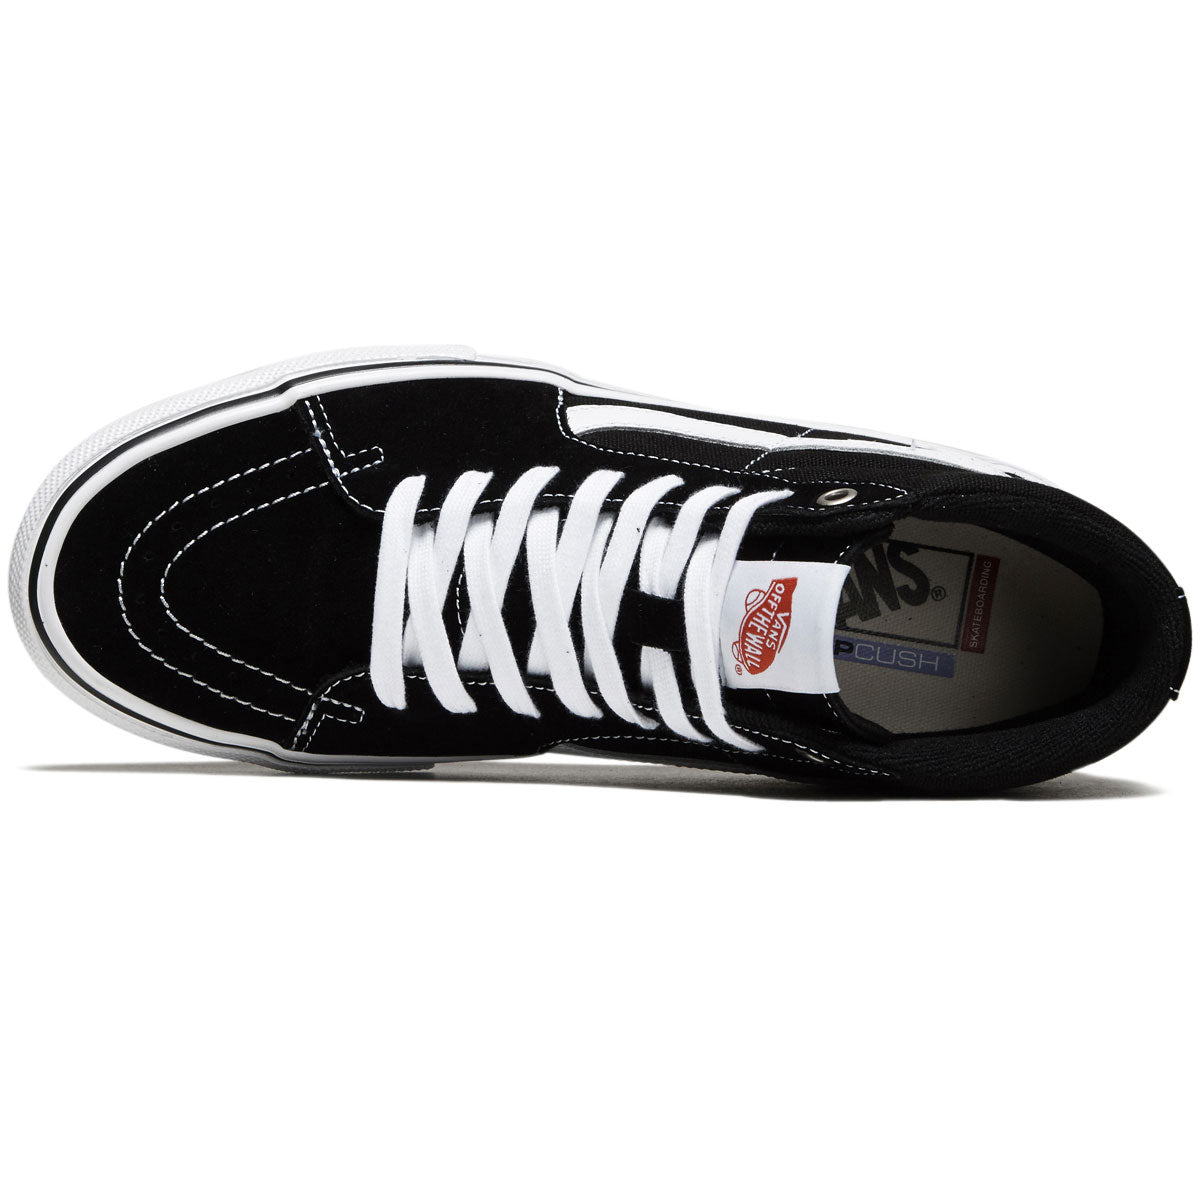 Vans Skate Sk8-hi Shoes - Black/White image 3